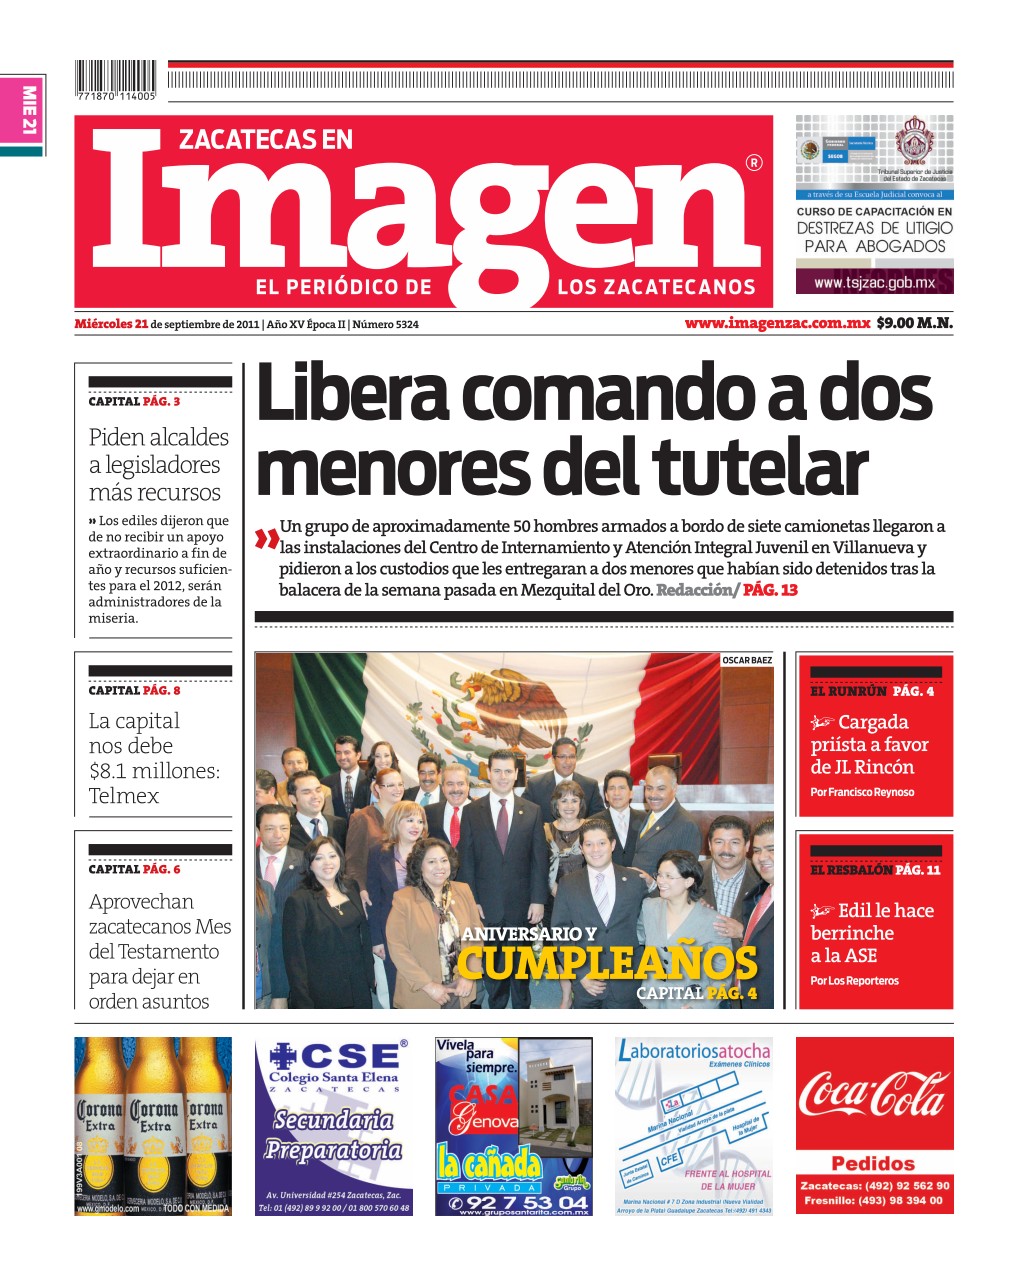 Imagen Zacatecas edición del 21 de Septiembre 2011